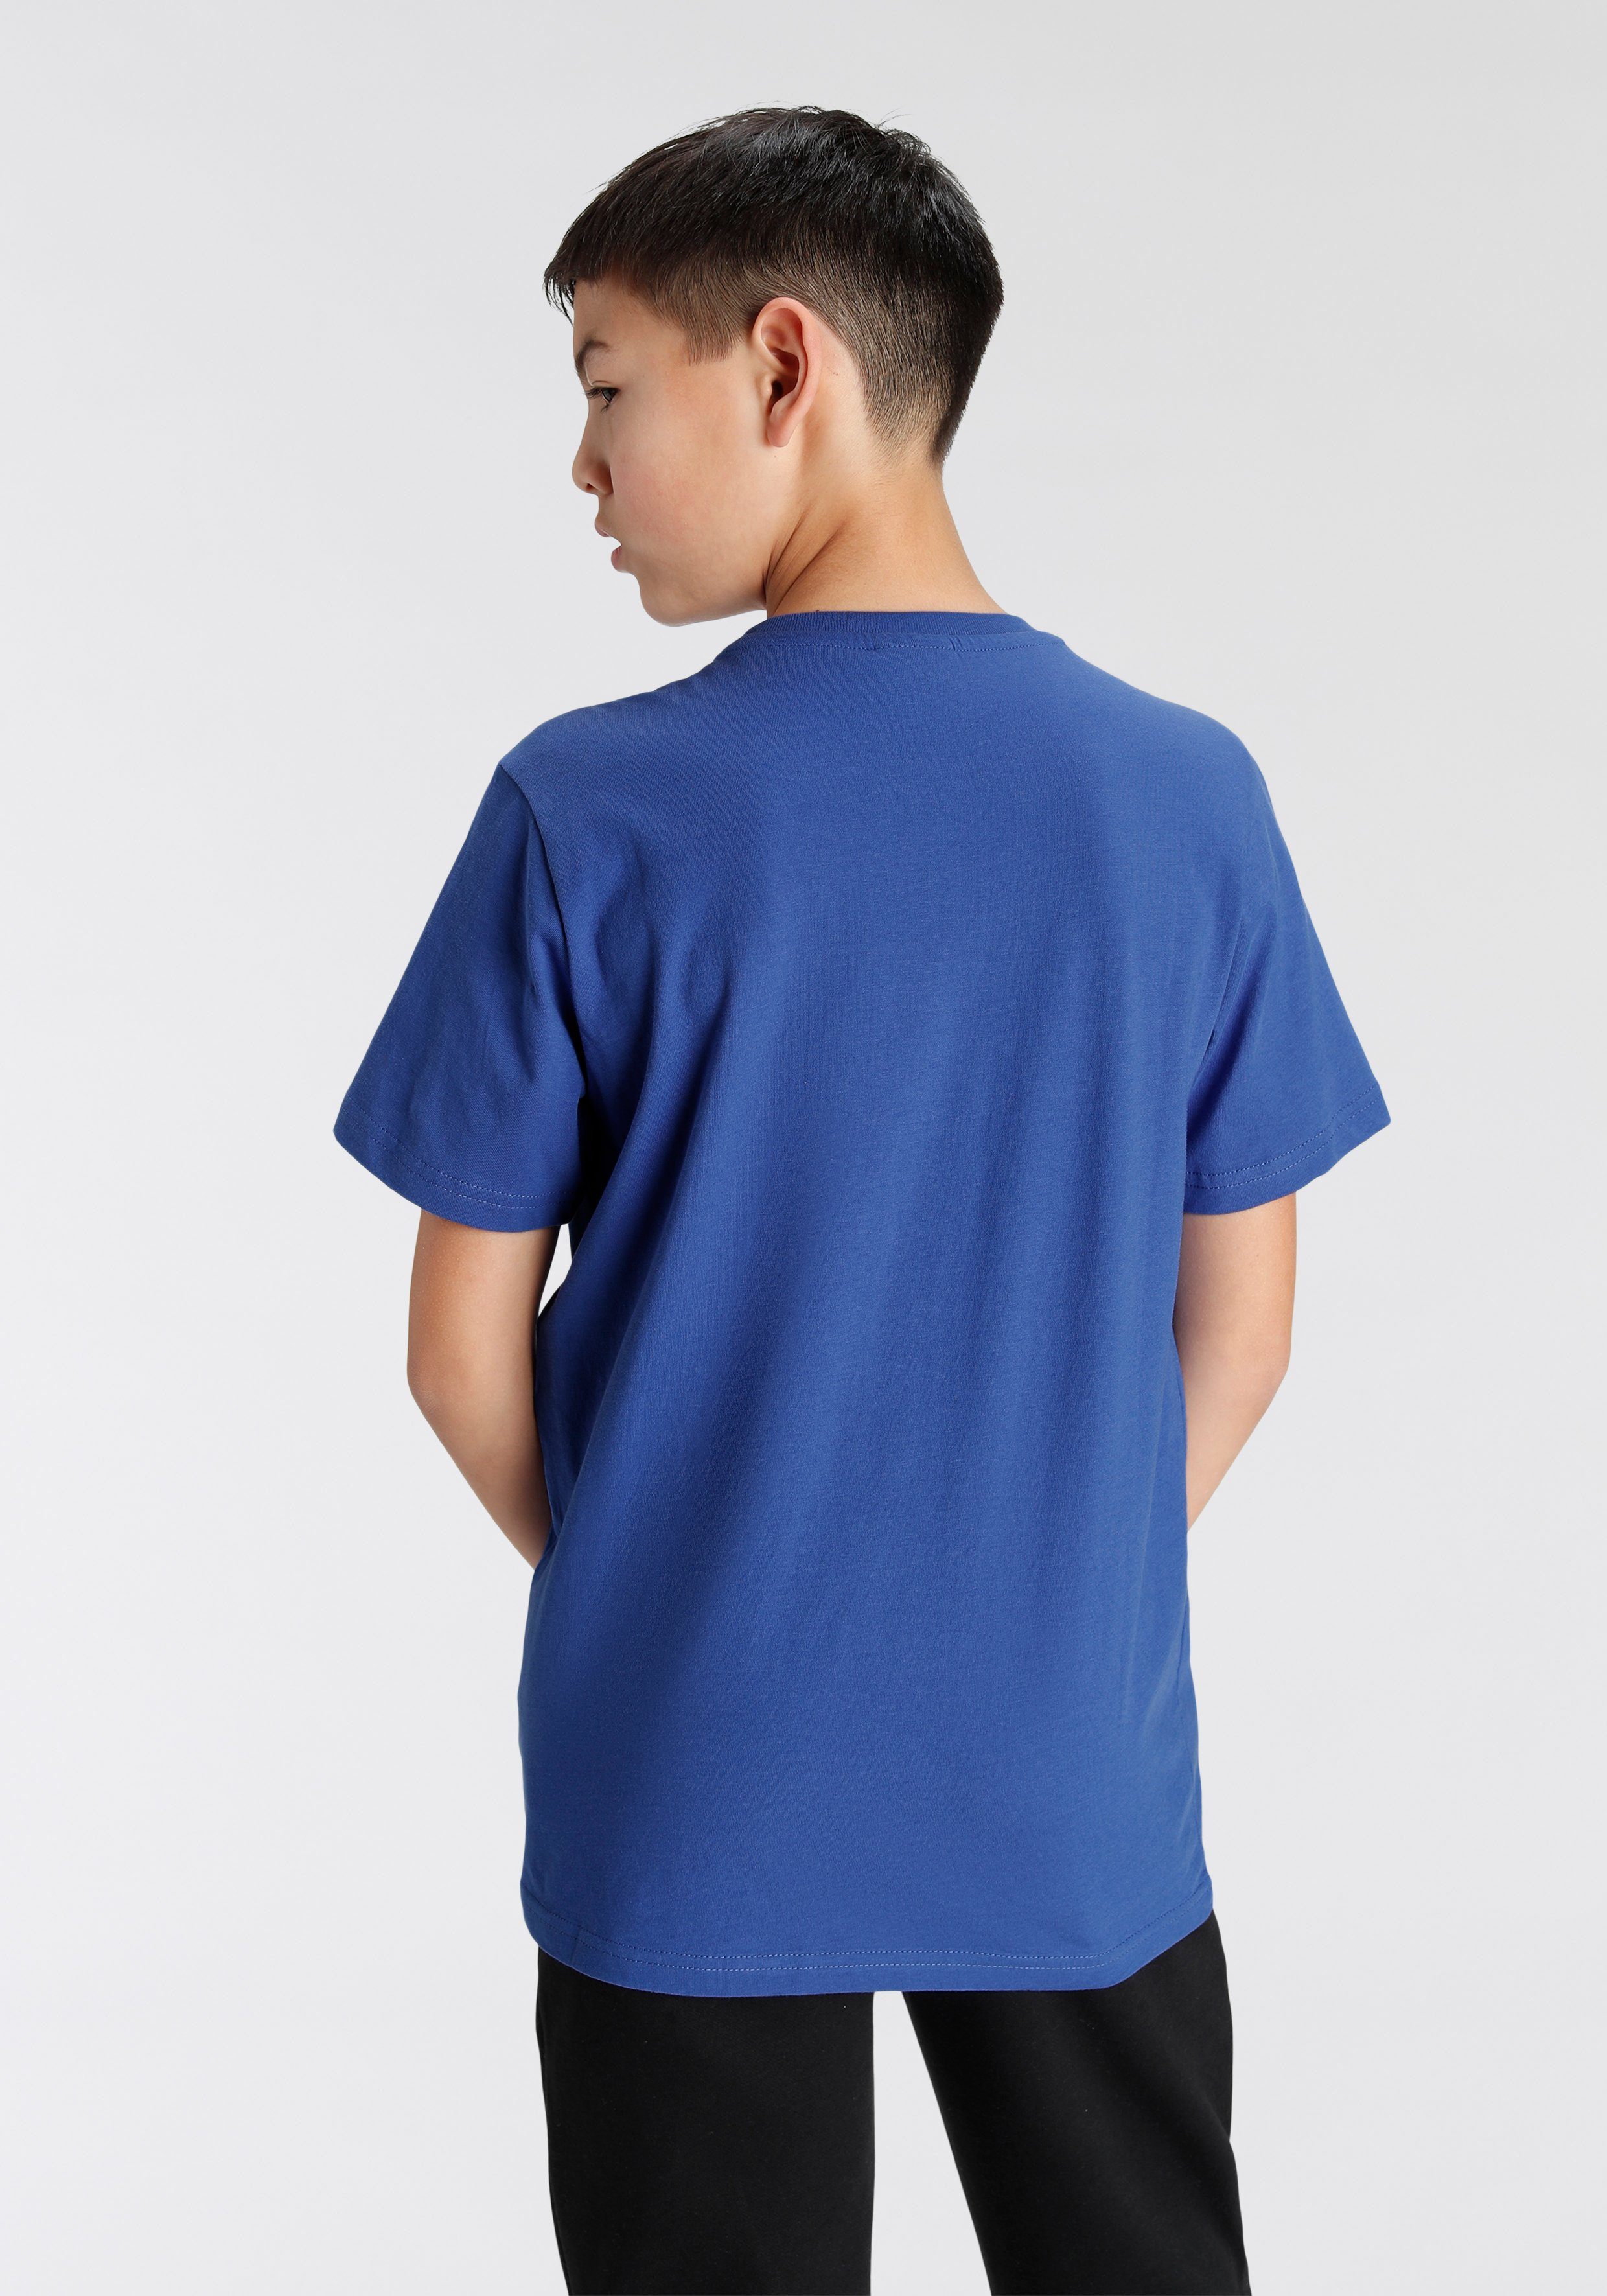 Kinder Crewneck für - 2Pack blau/weiß T-Shirt Champion T-Shirt